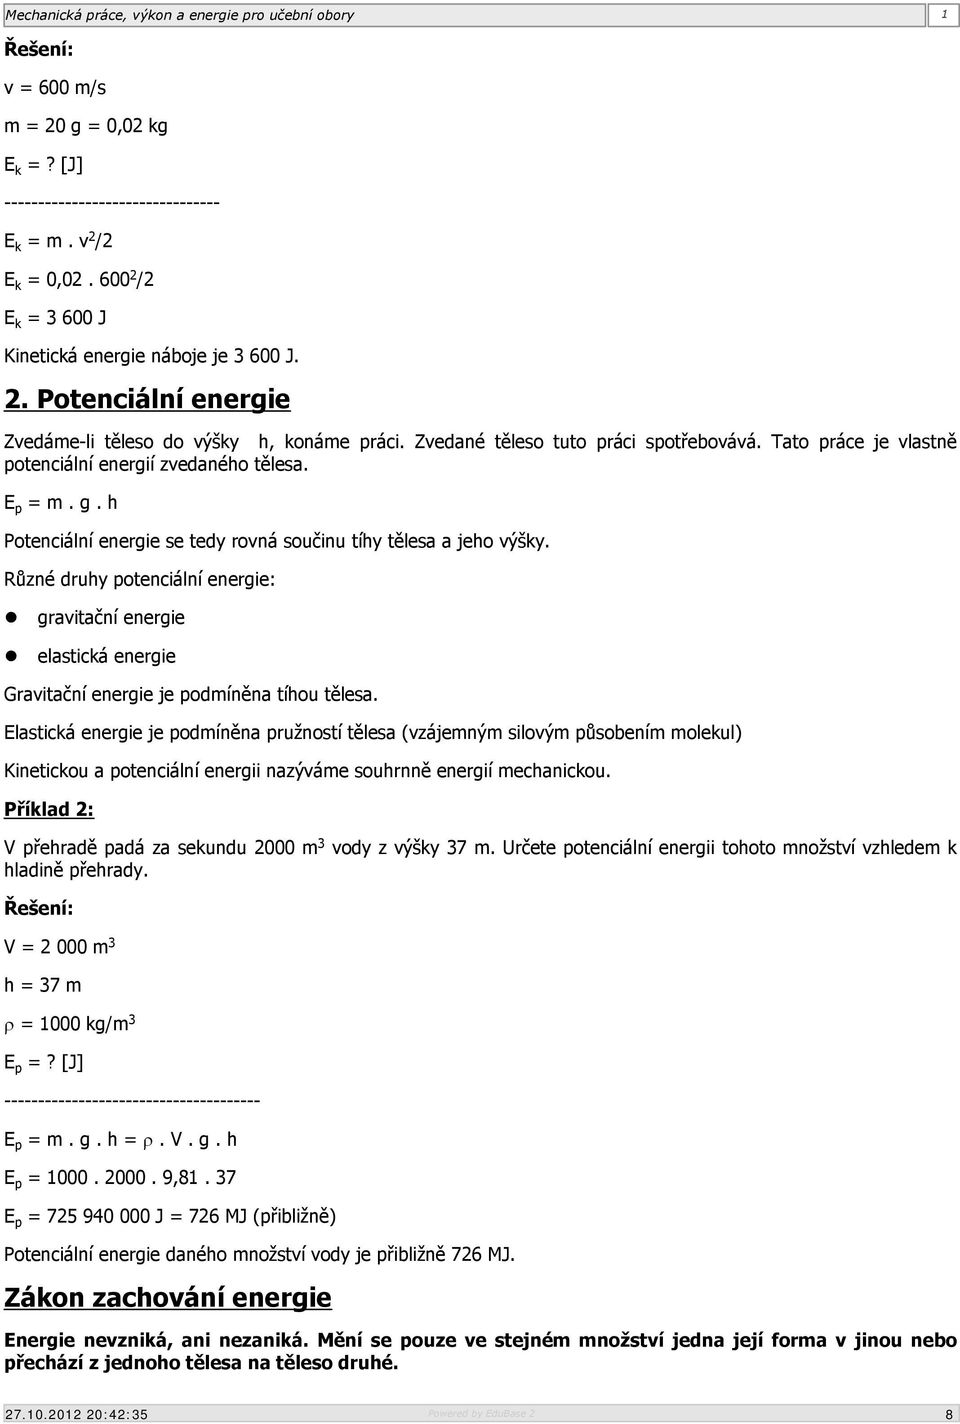 Mechanická práce, výkon a energie pro učební obory - PDF Stažení zdarma